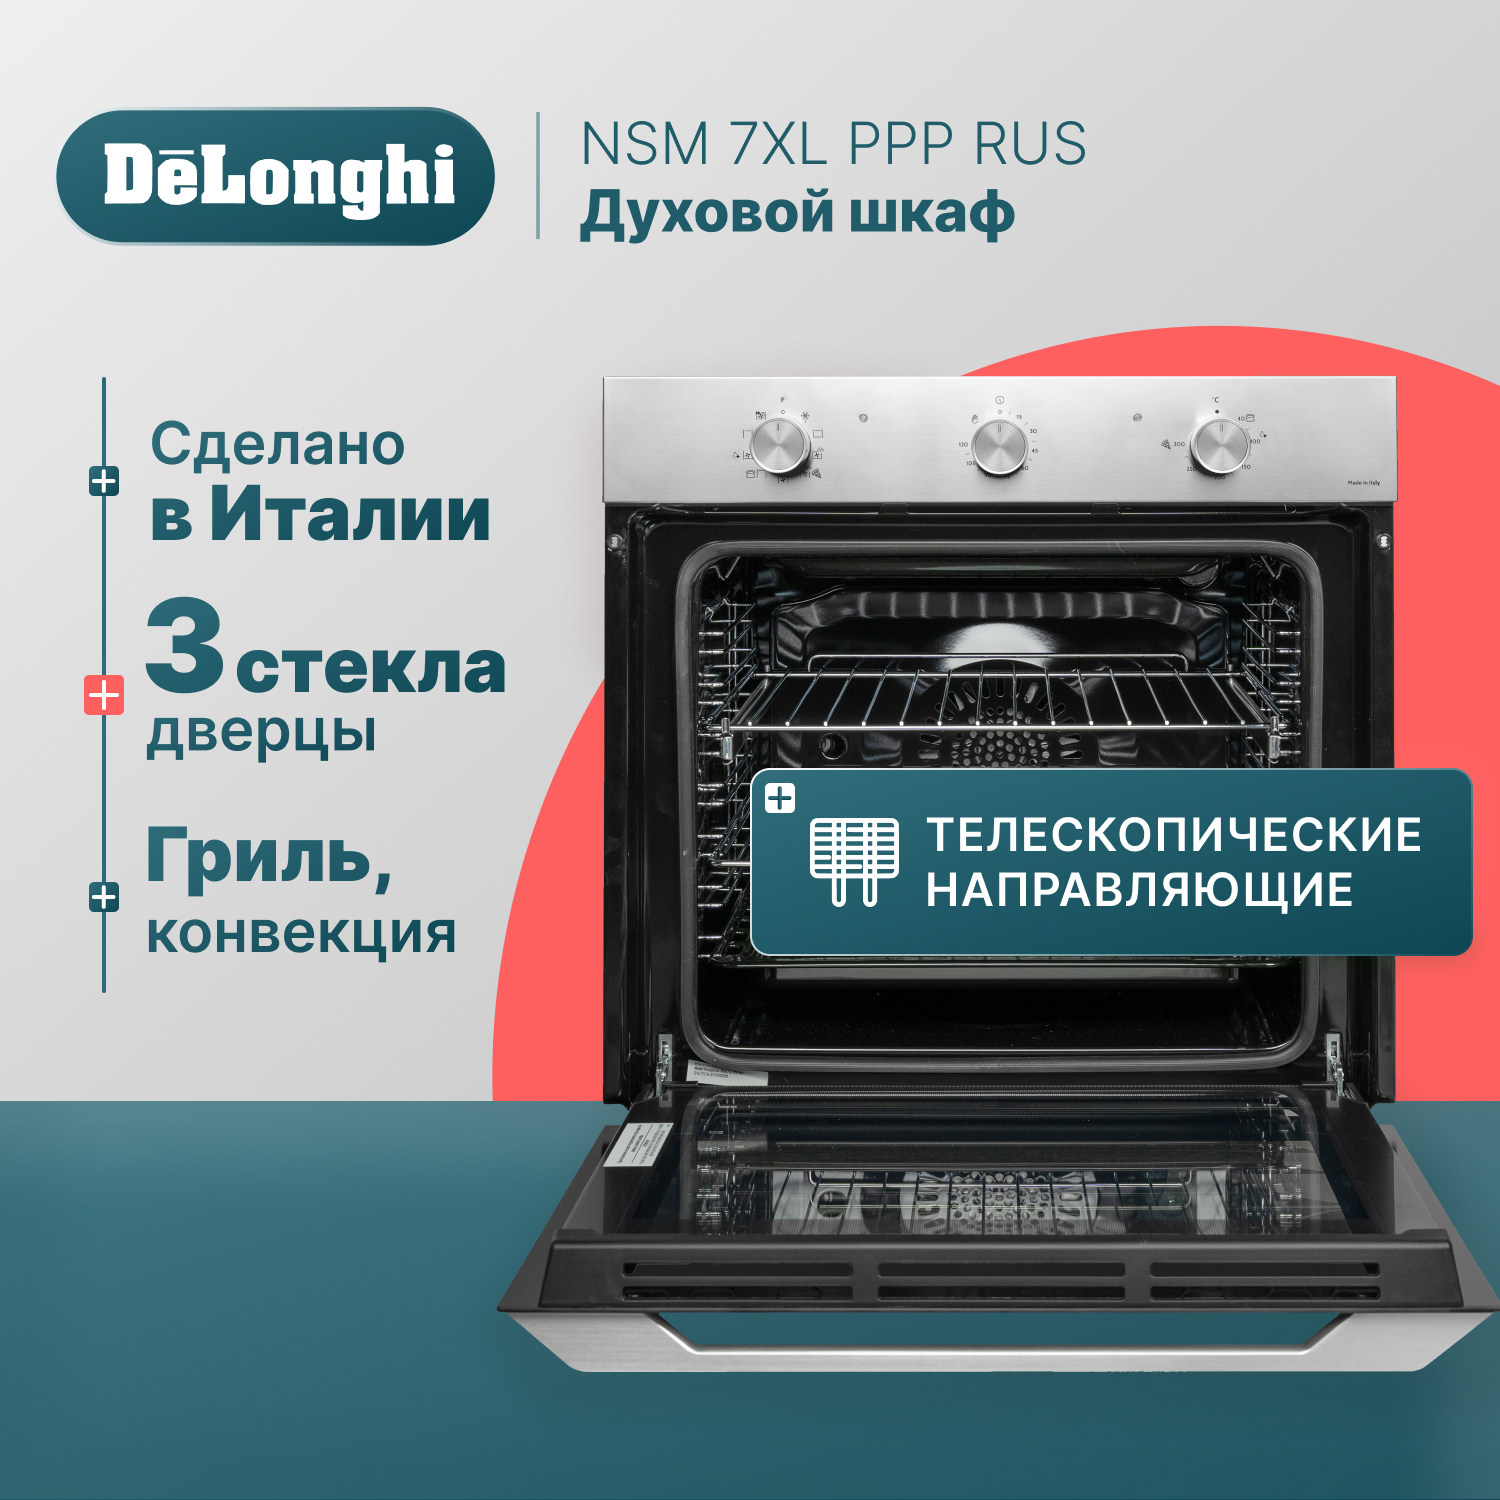 Встраиваемый электрический духовой шкаф Delonghi NSM 7XL PPP RUS серебристый, черный